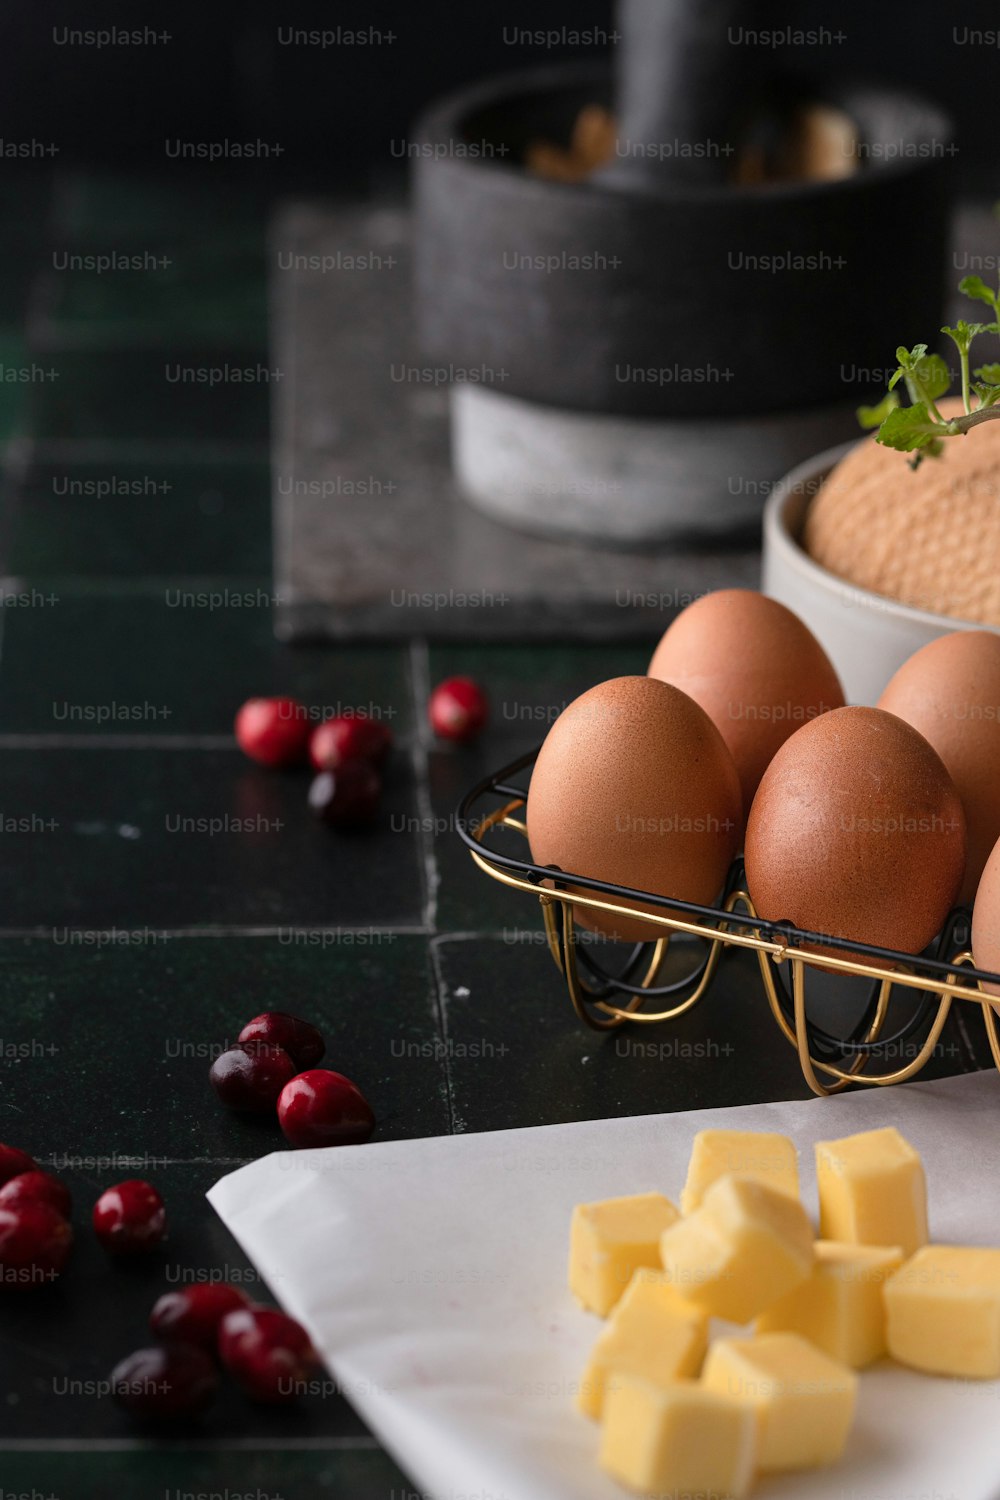 un plateau d’œufs et de fromage sur une table